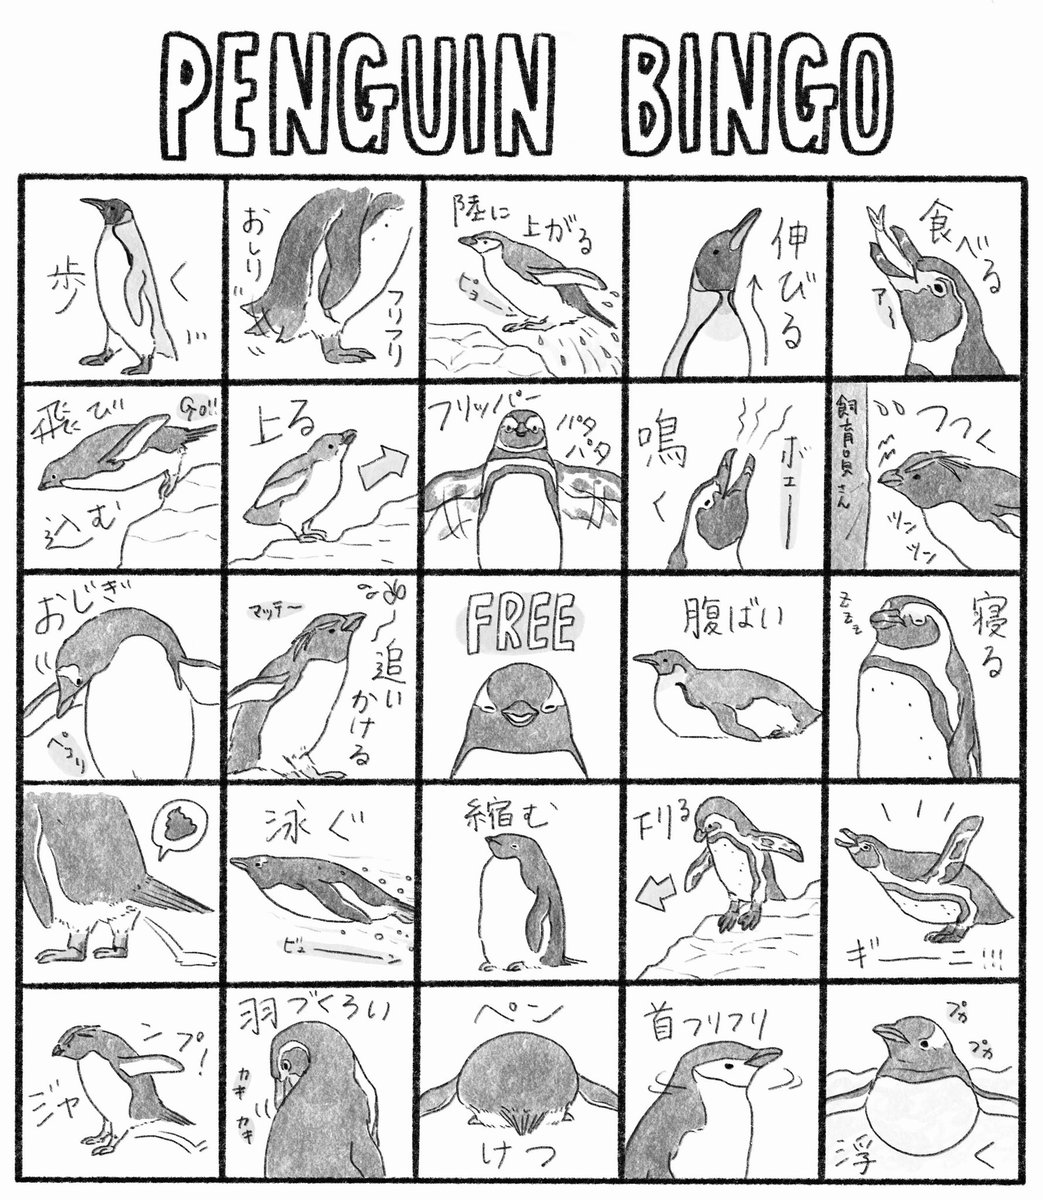 ペンギン仕草ビンゴ作りました🙌🏻水族館は今行きづらいけど、水族館中継のお供に!(種類やアングル等によってビンゴにならないかもですが、細かい事は気にせずゆる〜くお楽しみください🐧)(いろんなペンギンで描きましたが、何の種類でも🙆‍♀️)
個人使用ならご自由にどうぞ!2枚目はモノクロ印刷用です🐧 